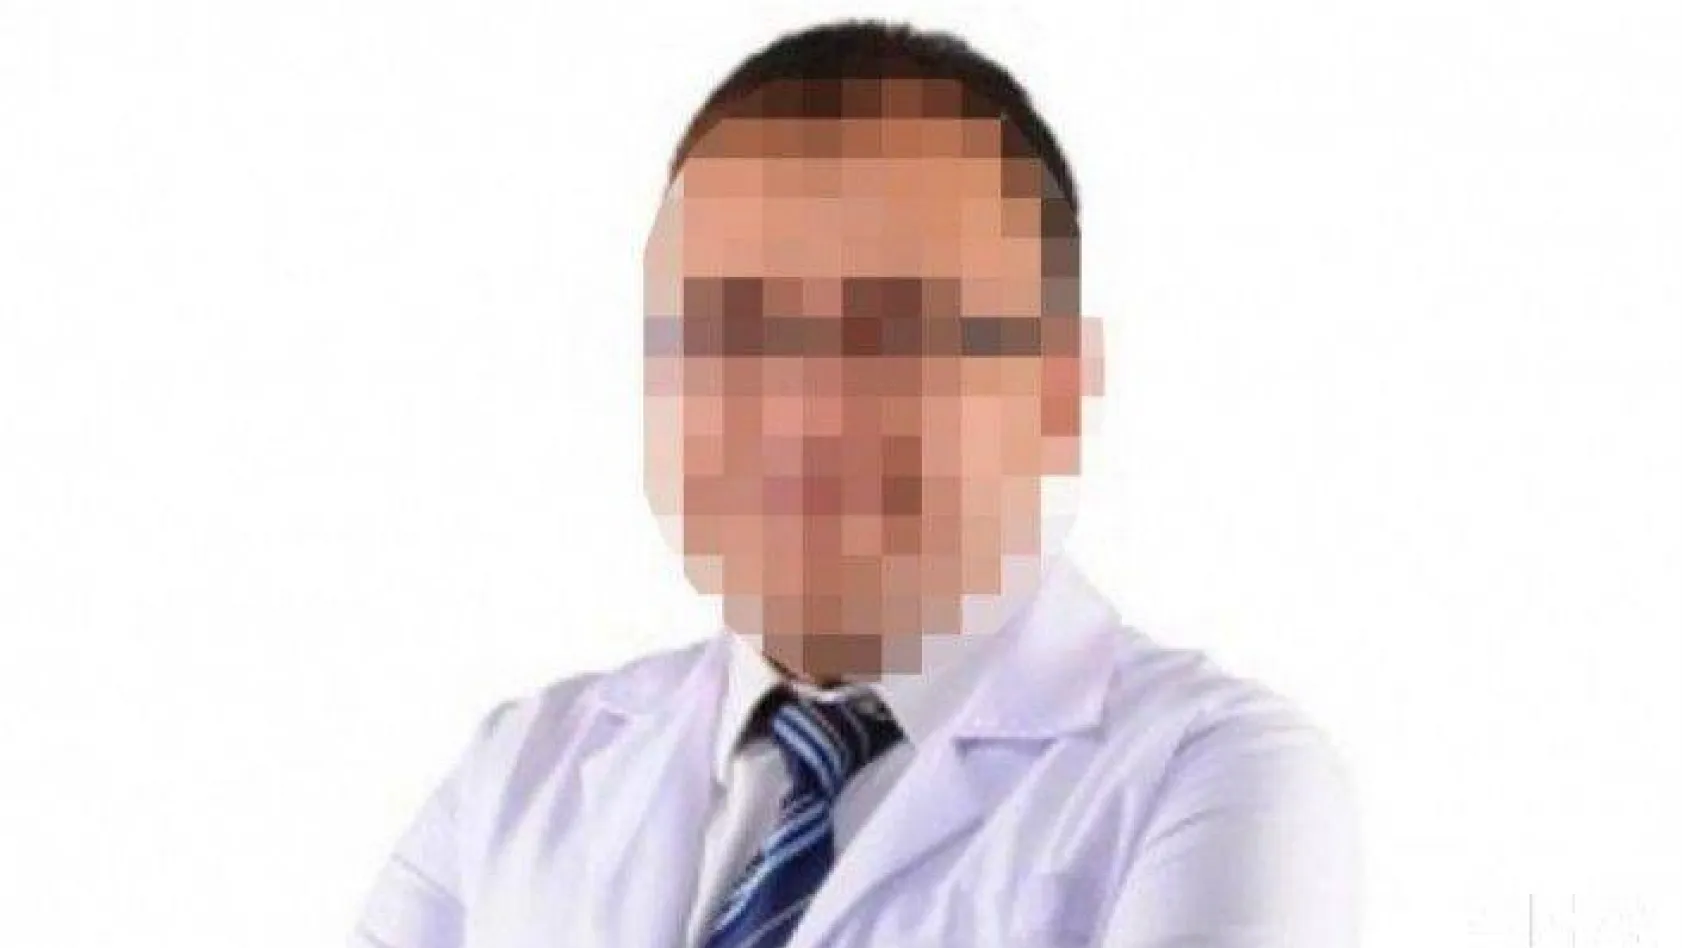 Çocuk pornosu soruşturmasında yakalanan doktorda FETÖ belgeleri ele geçirildi